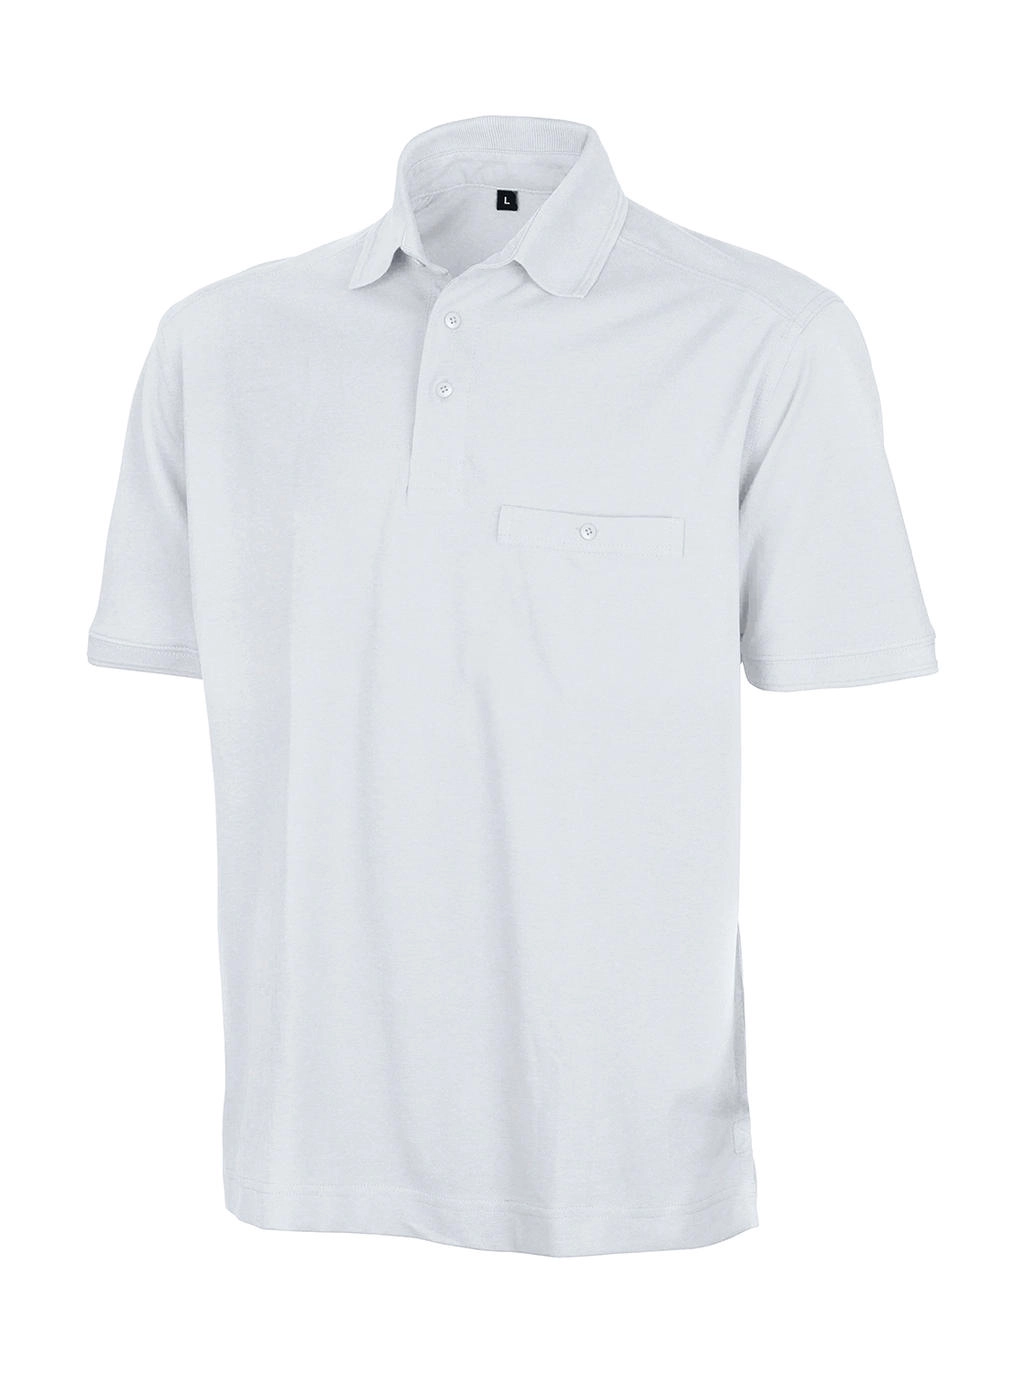 Apex Polo Shirt zum Besticken und Bedrucken in der Farbe White mit Ihren Logo, Schriftzug oder Motiv.